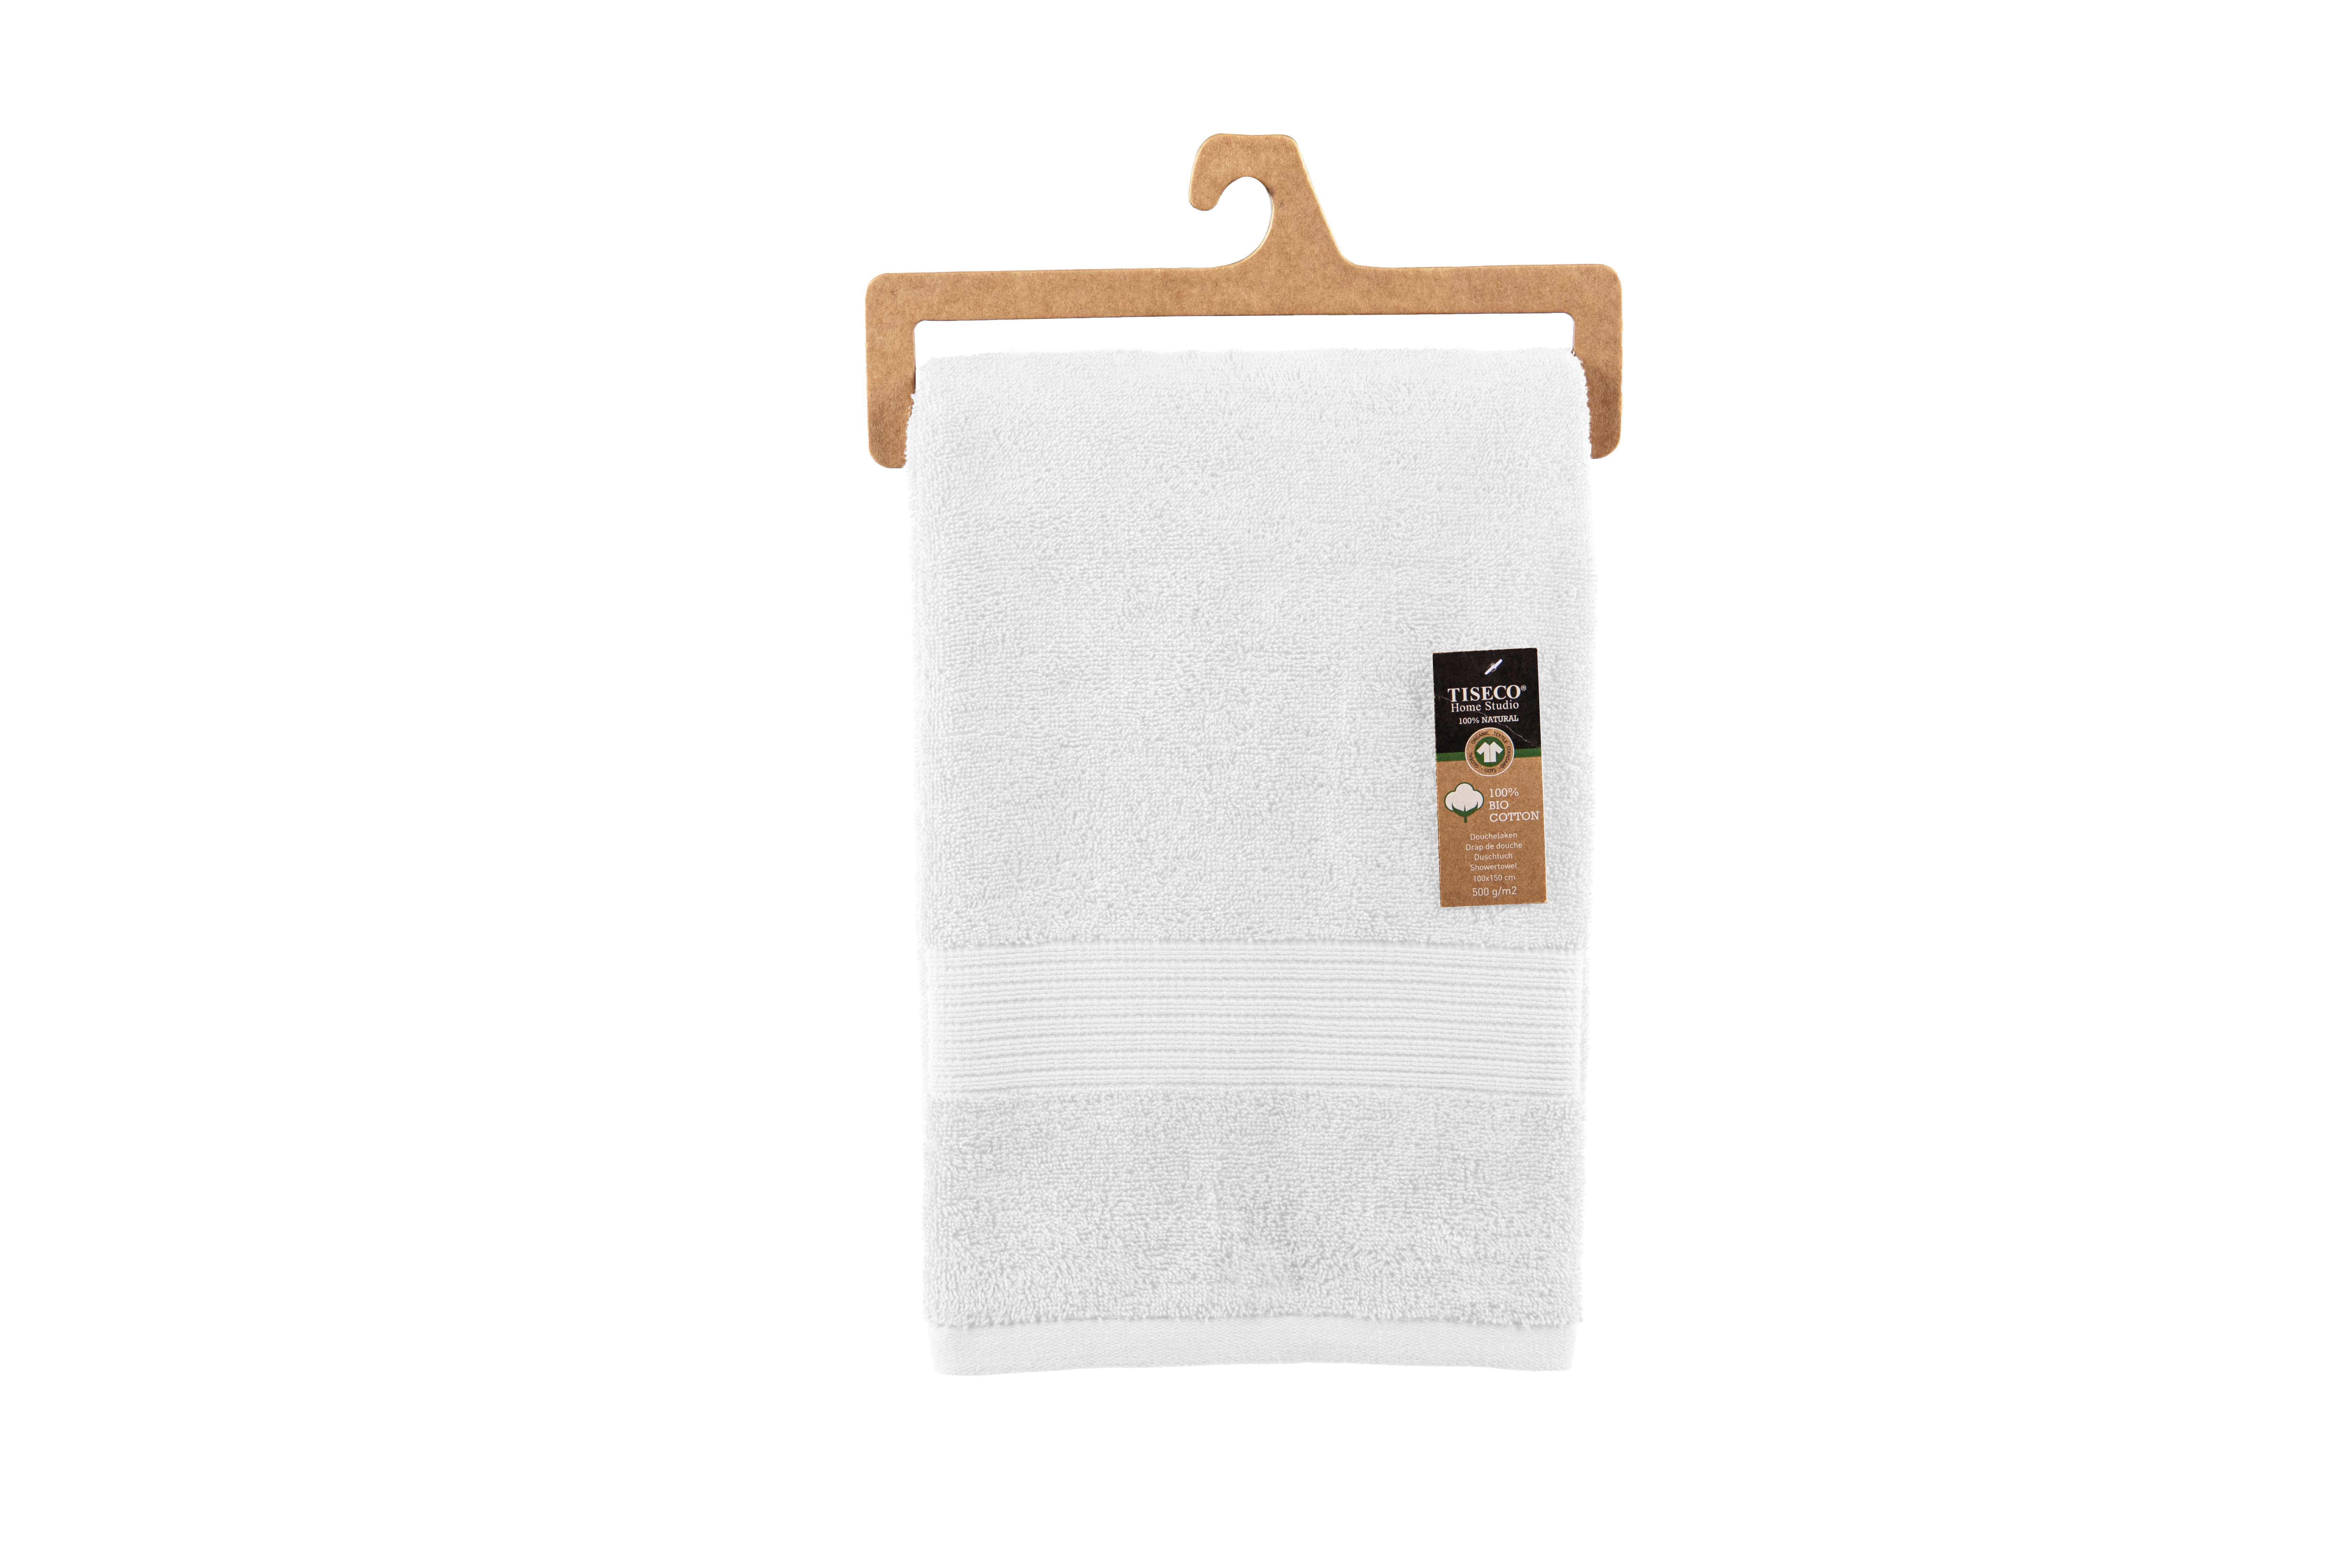 Shower towel EDEN 100x150cm, star white